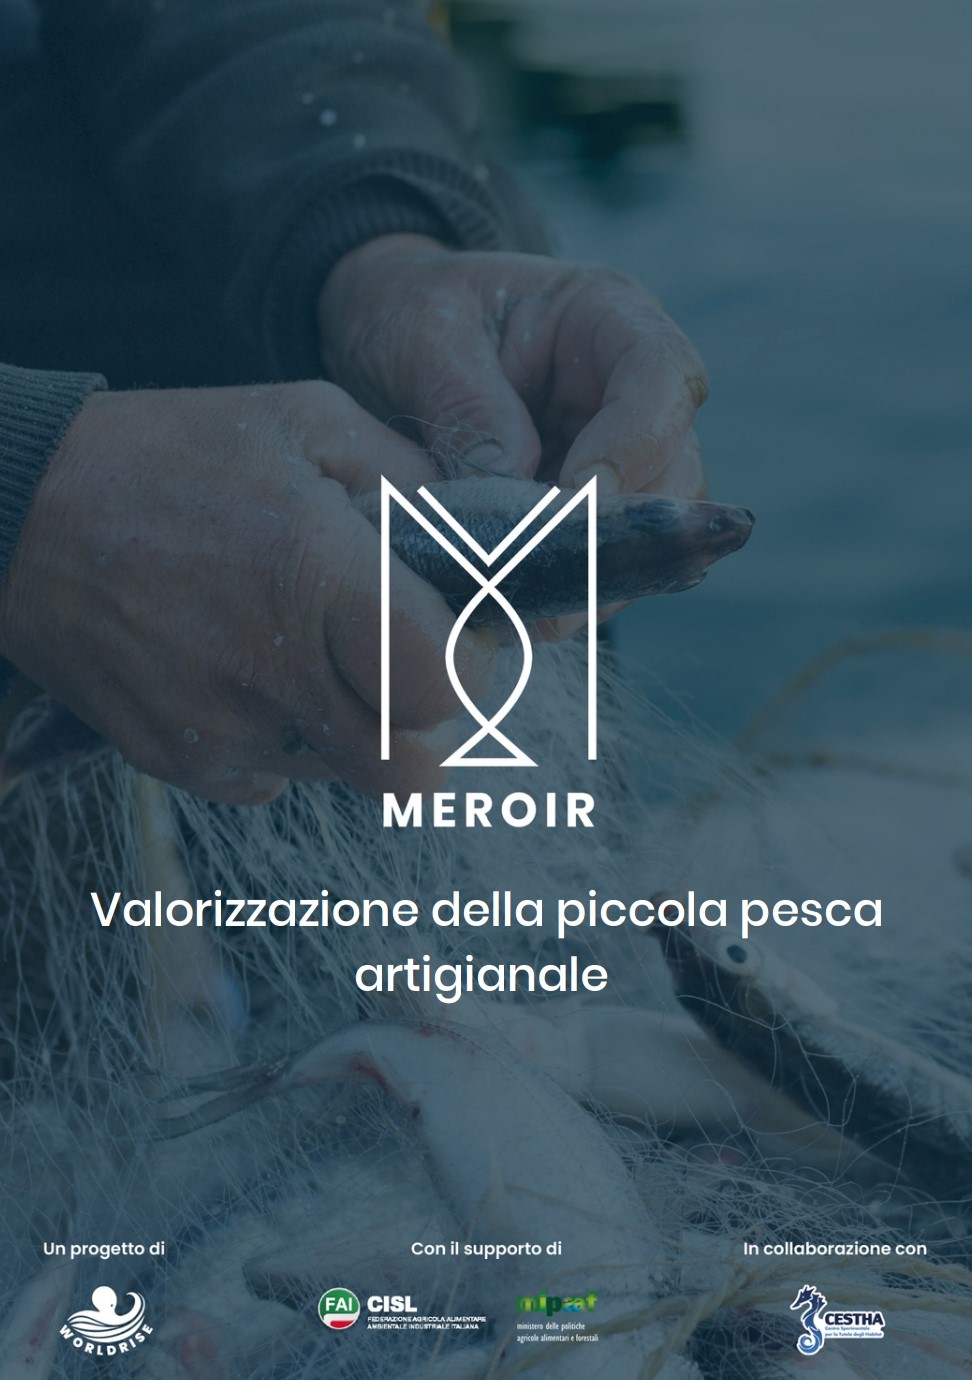 Report MEROIR Valorizzazione della piccola pesca artigianale Progetto di Worldrise con il supporto di Fai Cisl e Mipaaf in collaborazione con Cestha